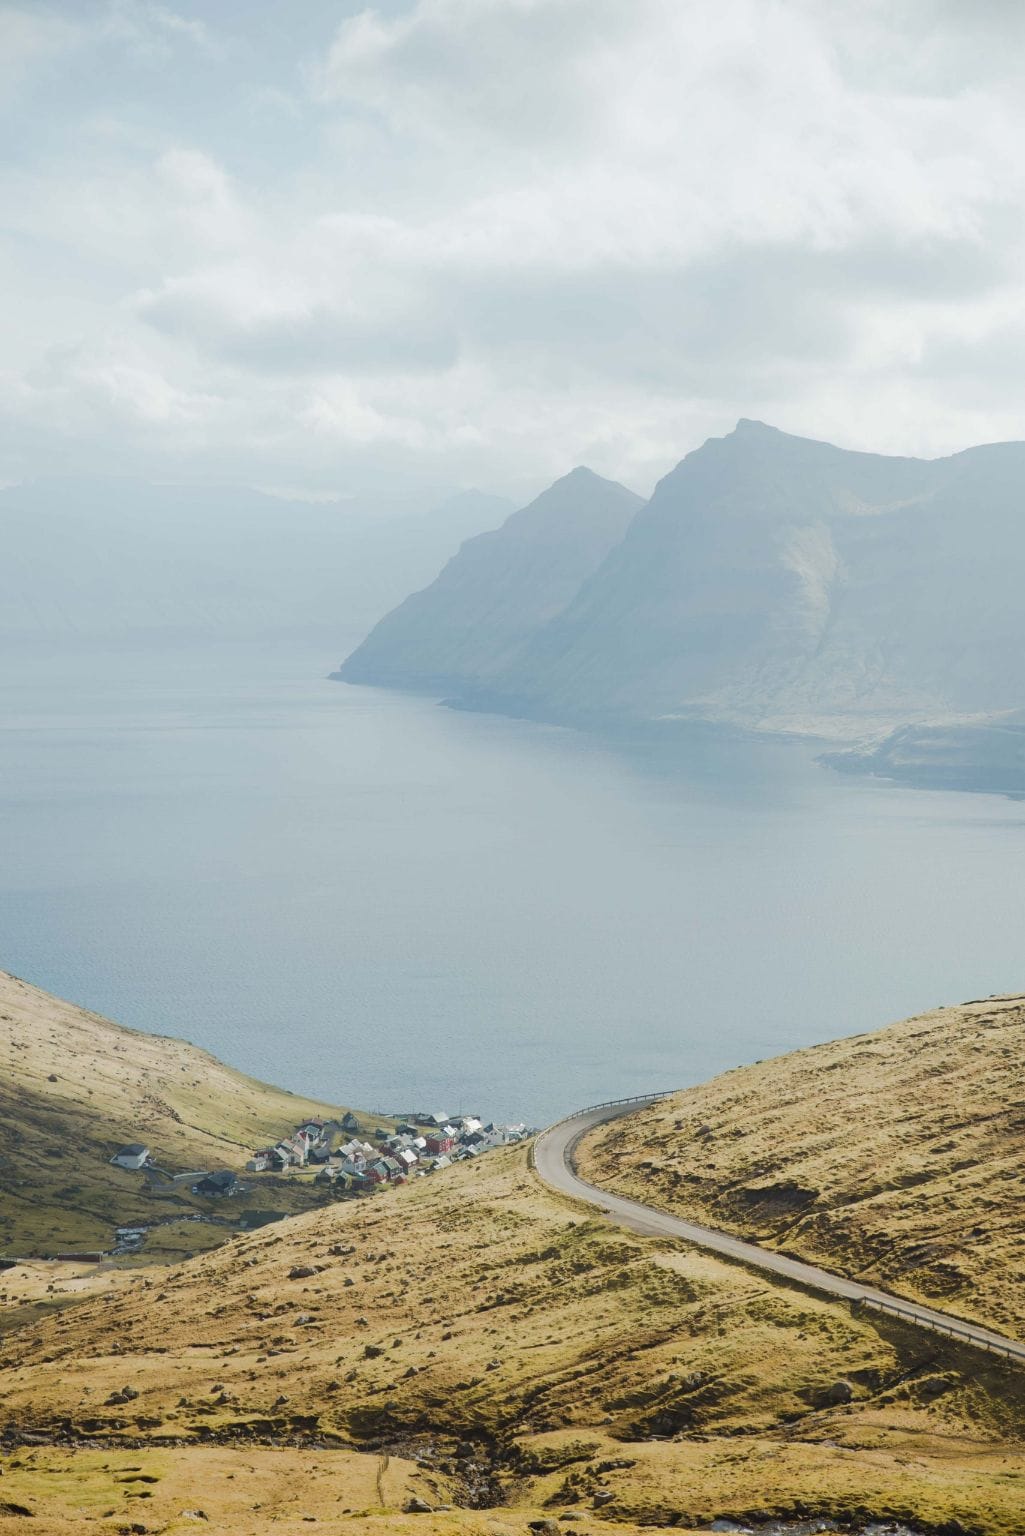 Stephen Norman Faroe Islands image 32